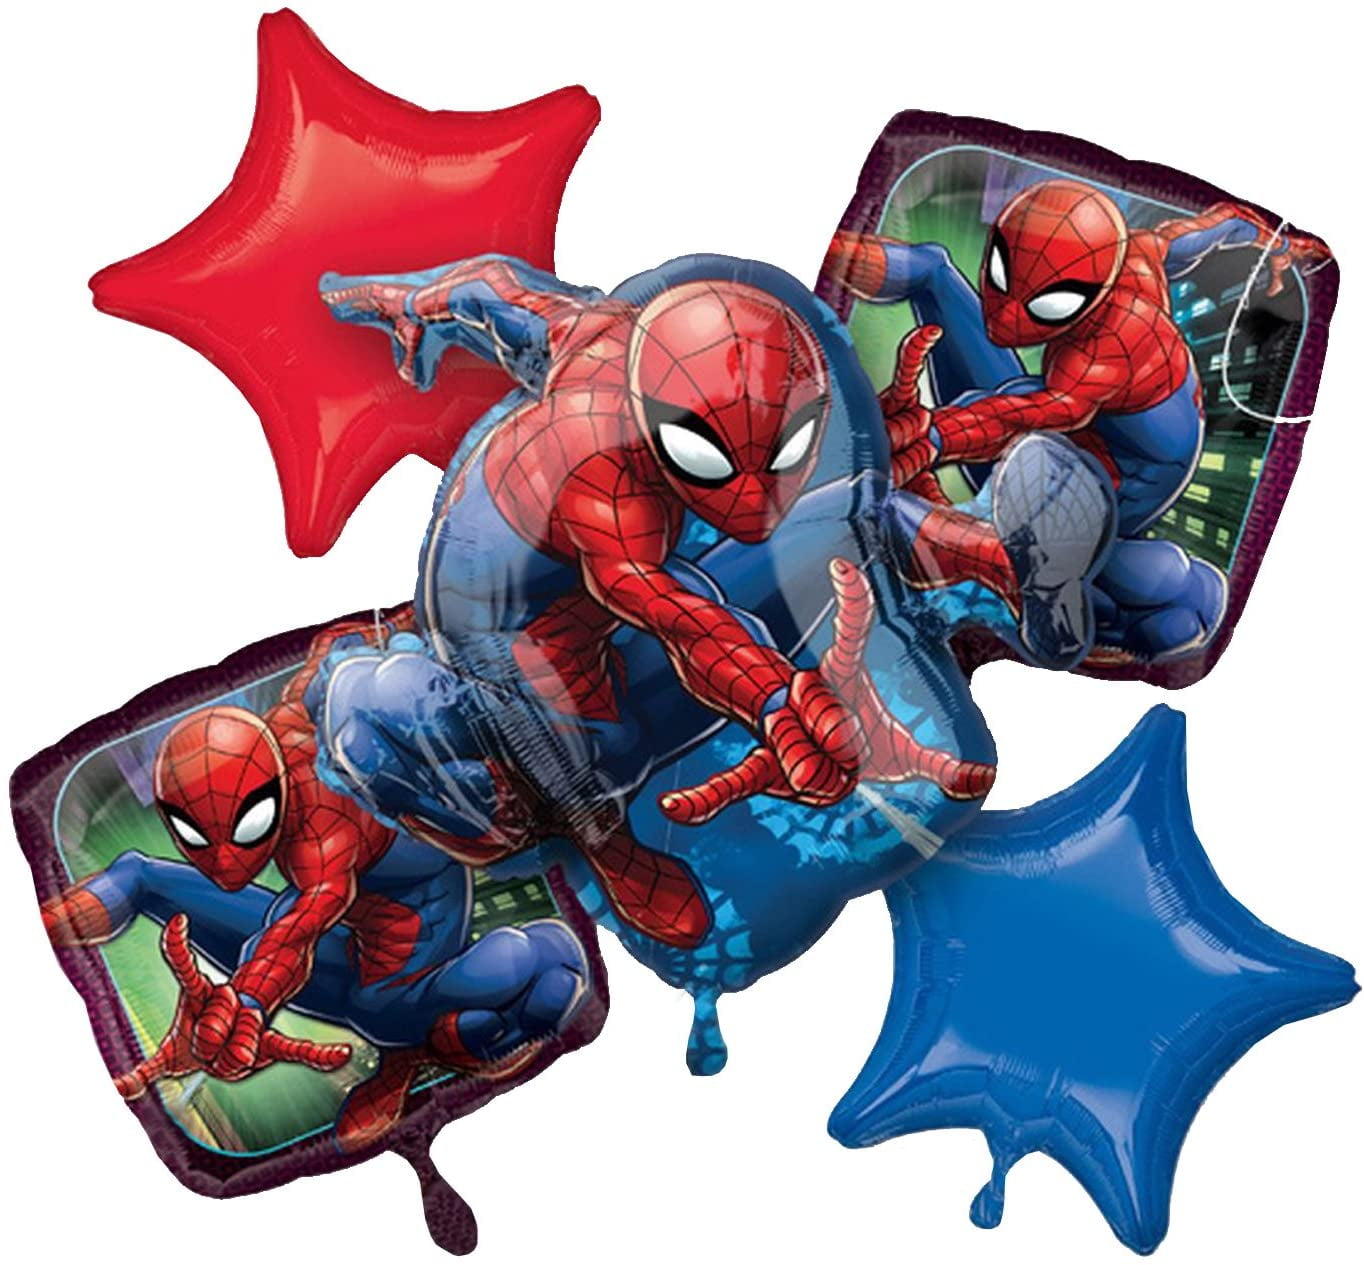 Piñata Spiderman de segunda mano en WALLAPOP